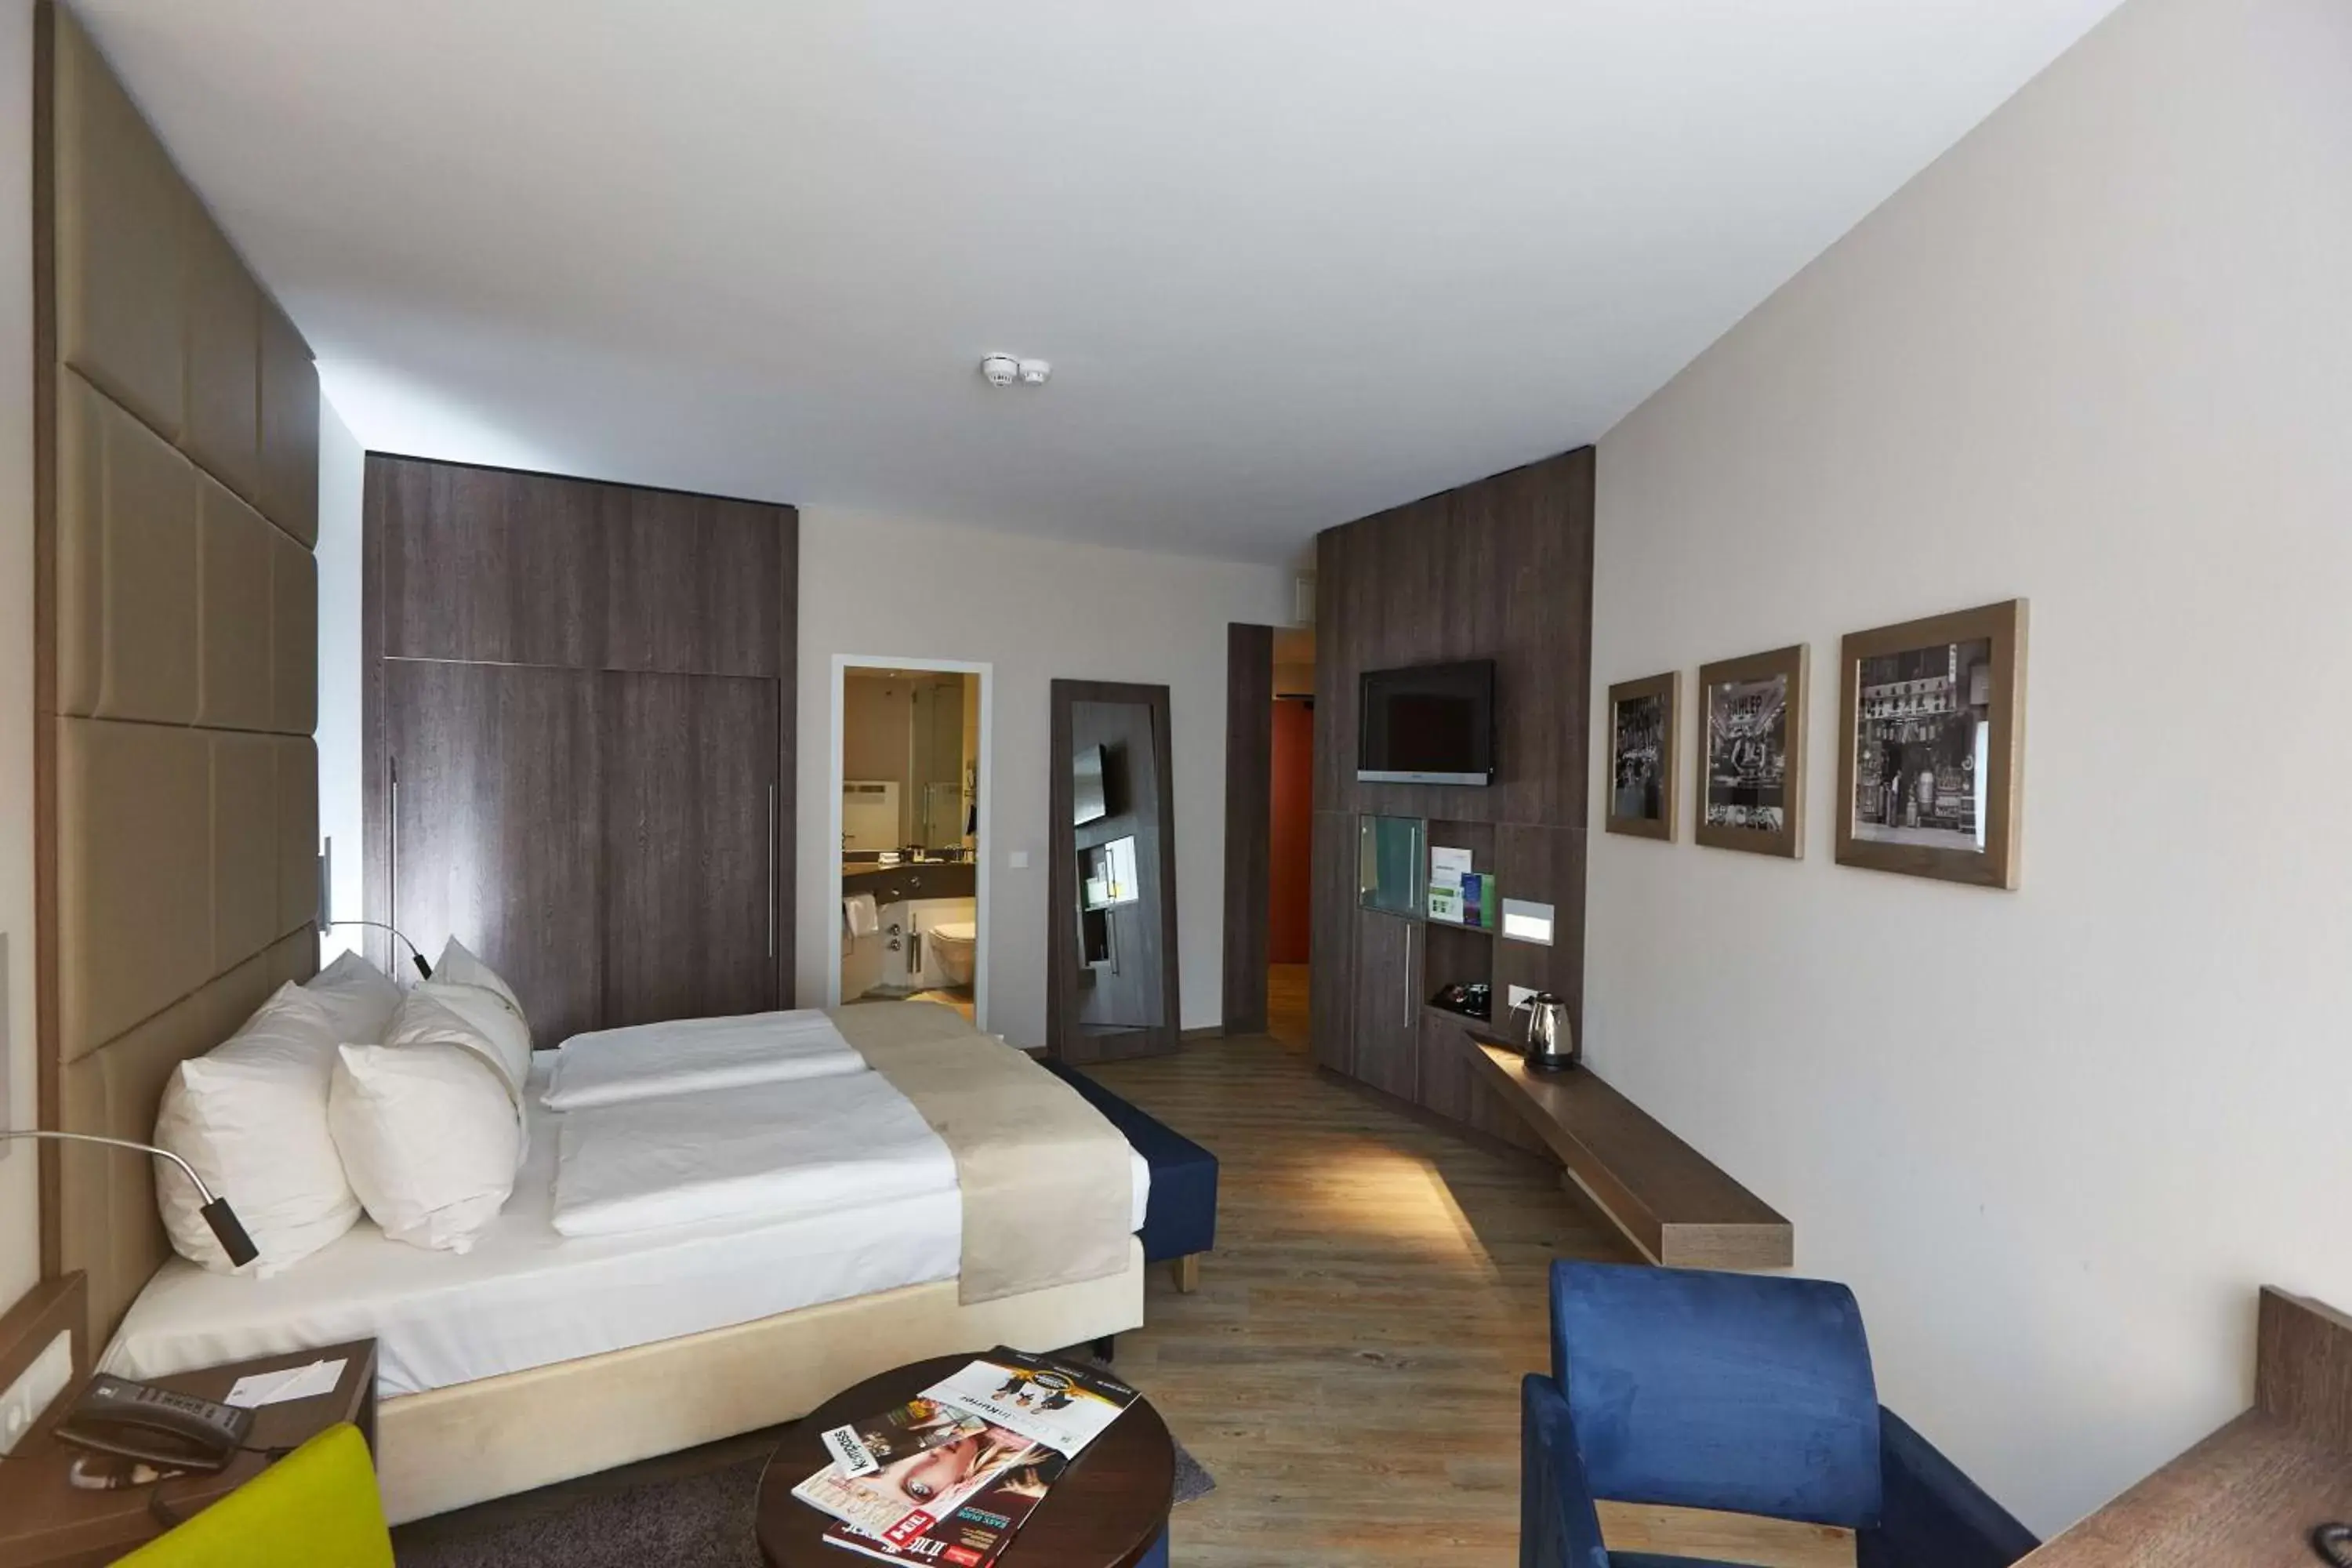 Bedroom in First Inn Hotel Zwickau